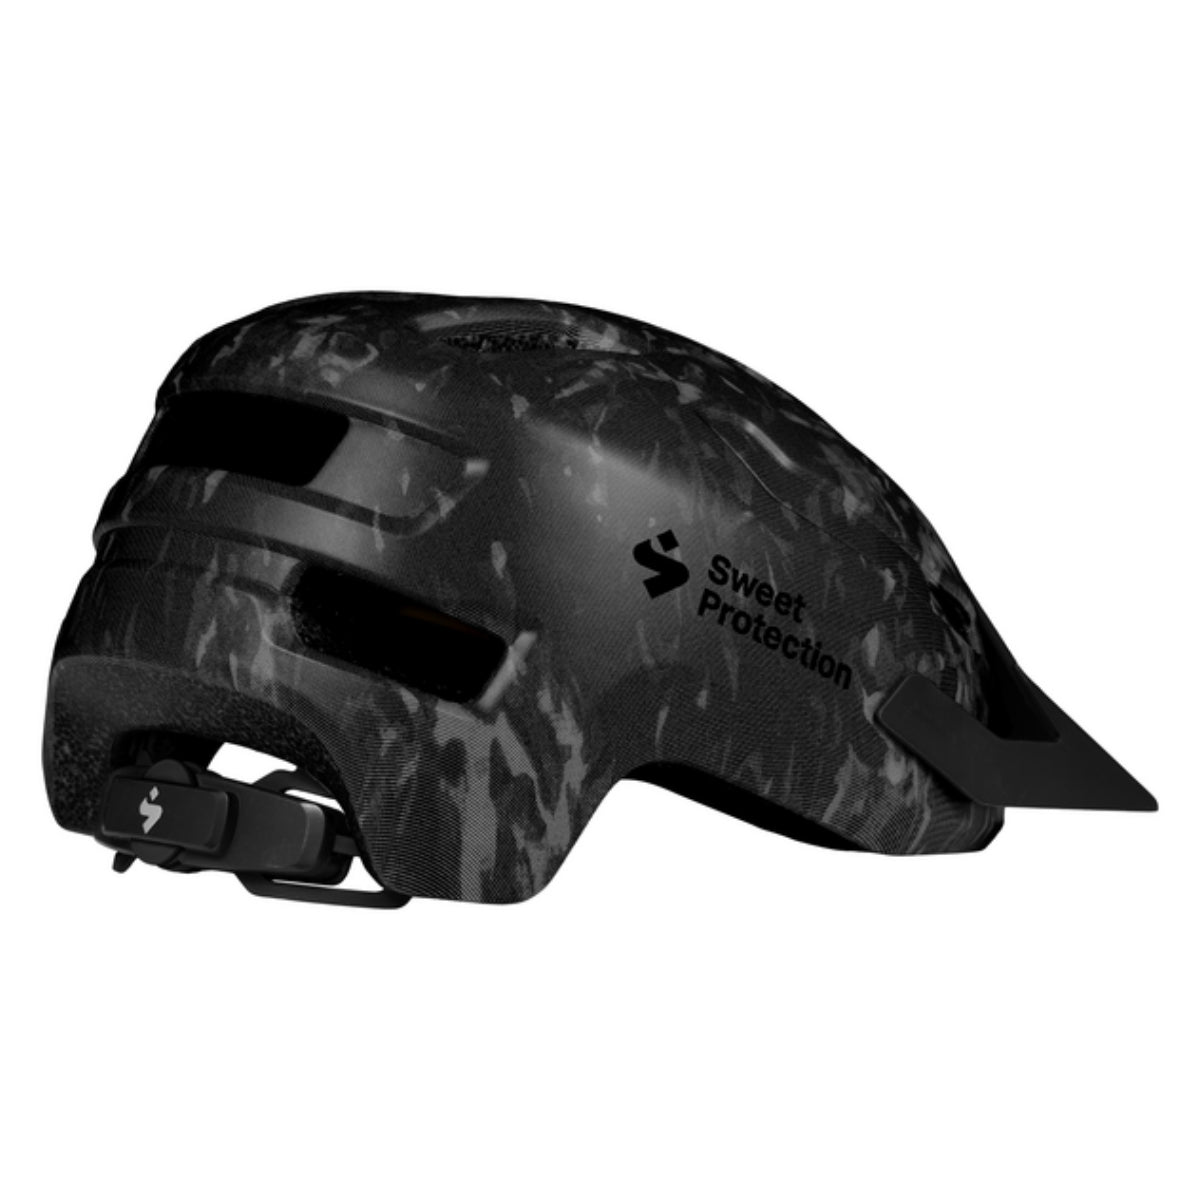 Sweet Protection - Ripper Mips Helmet Junior - Black Tie